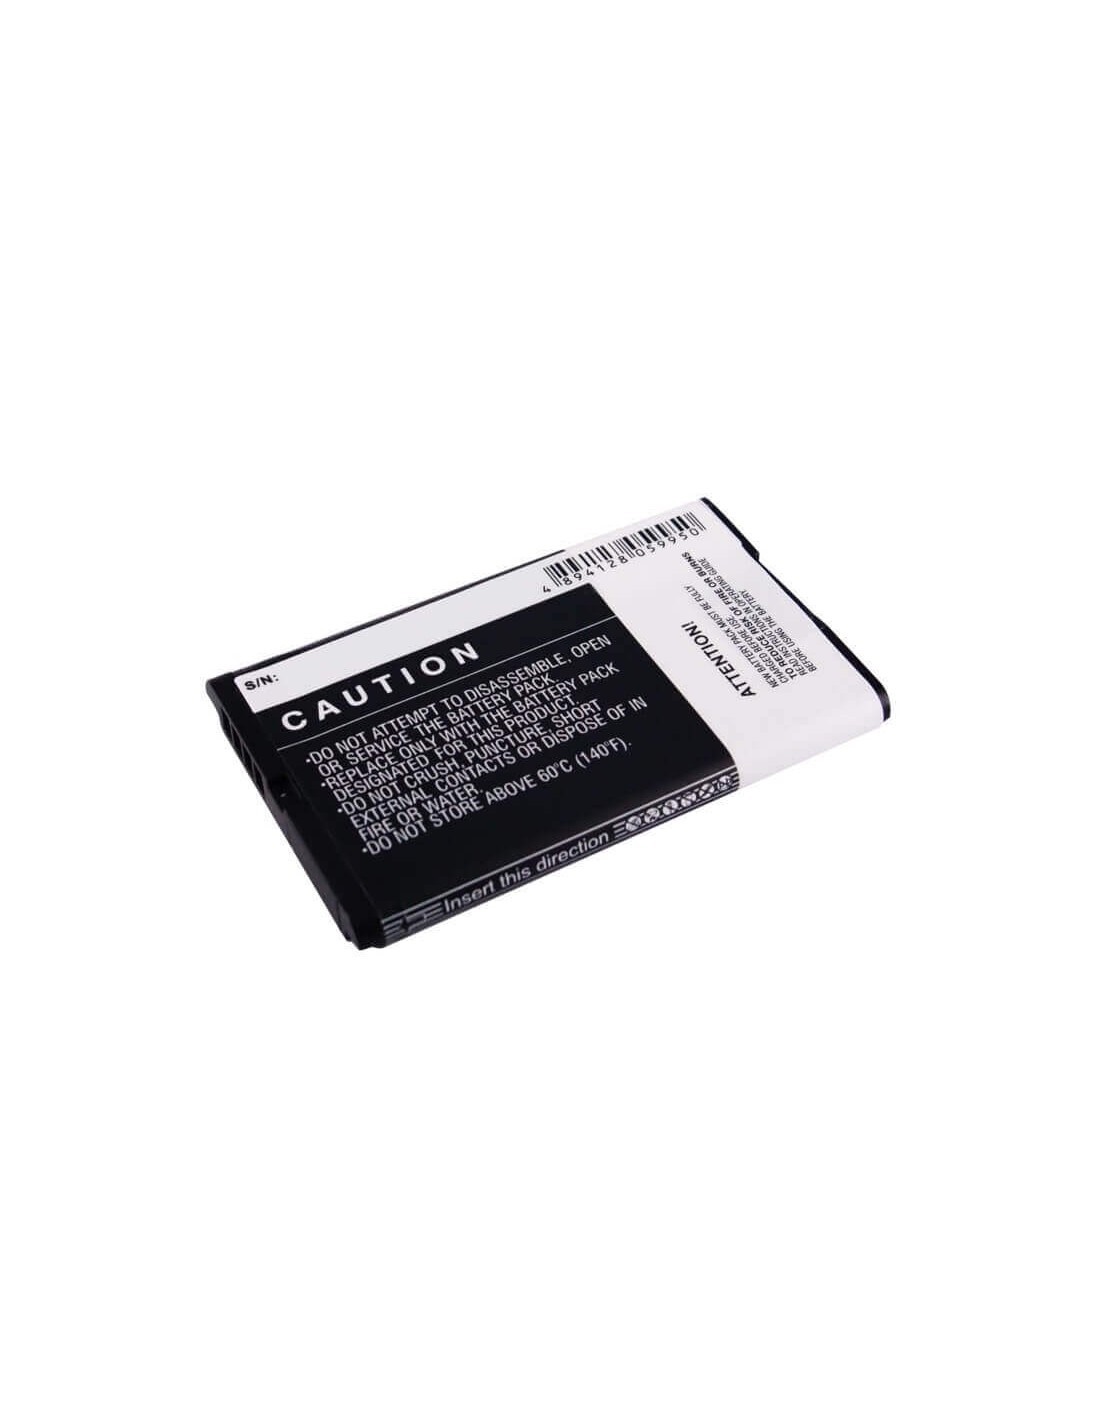 Battery for Blackberry 8700, 8700c, 8700f 3.7V, 1200mAh - 4.44Wh